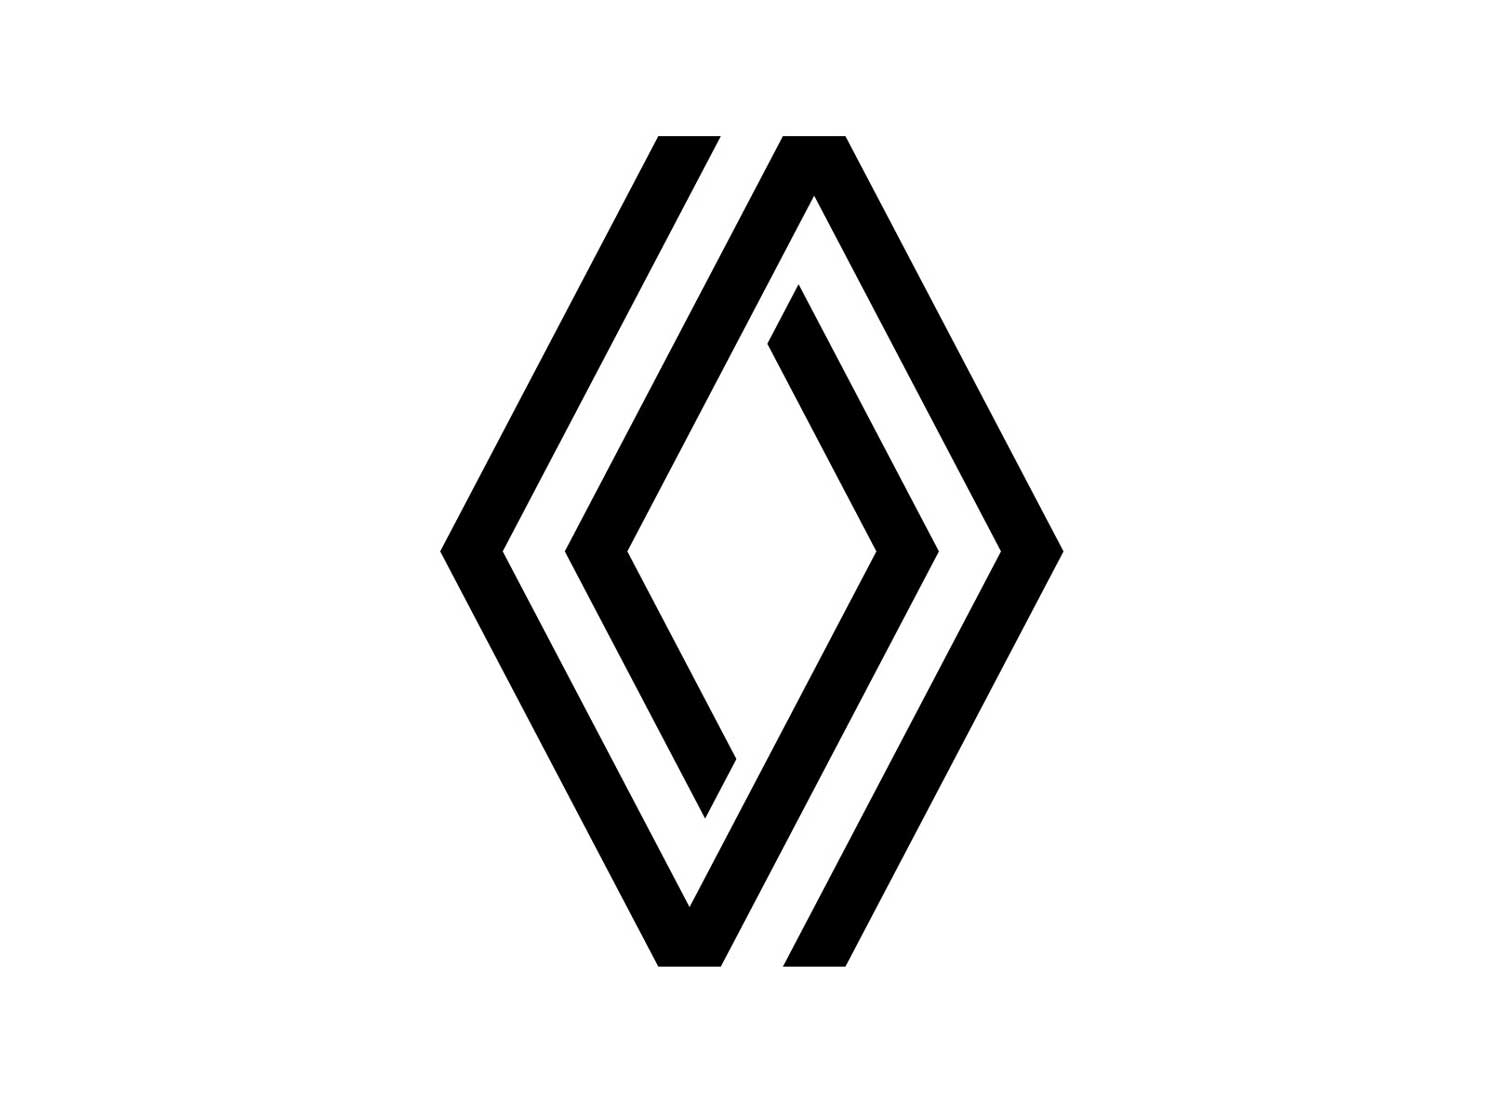 Renault logo - After